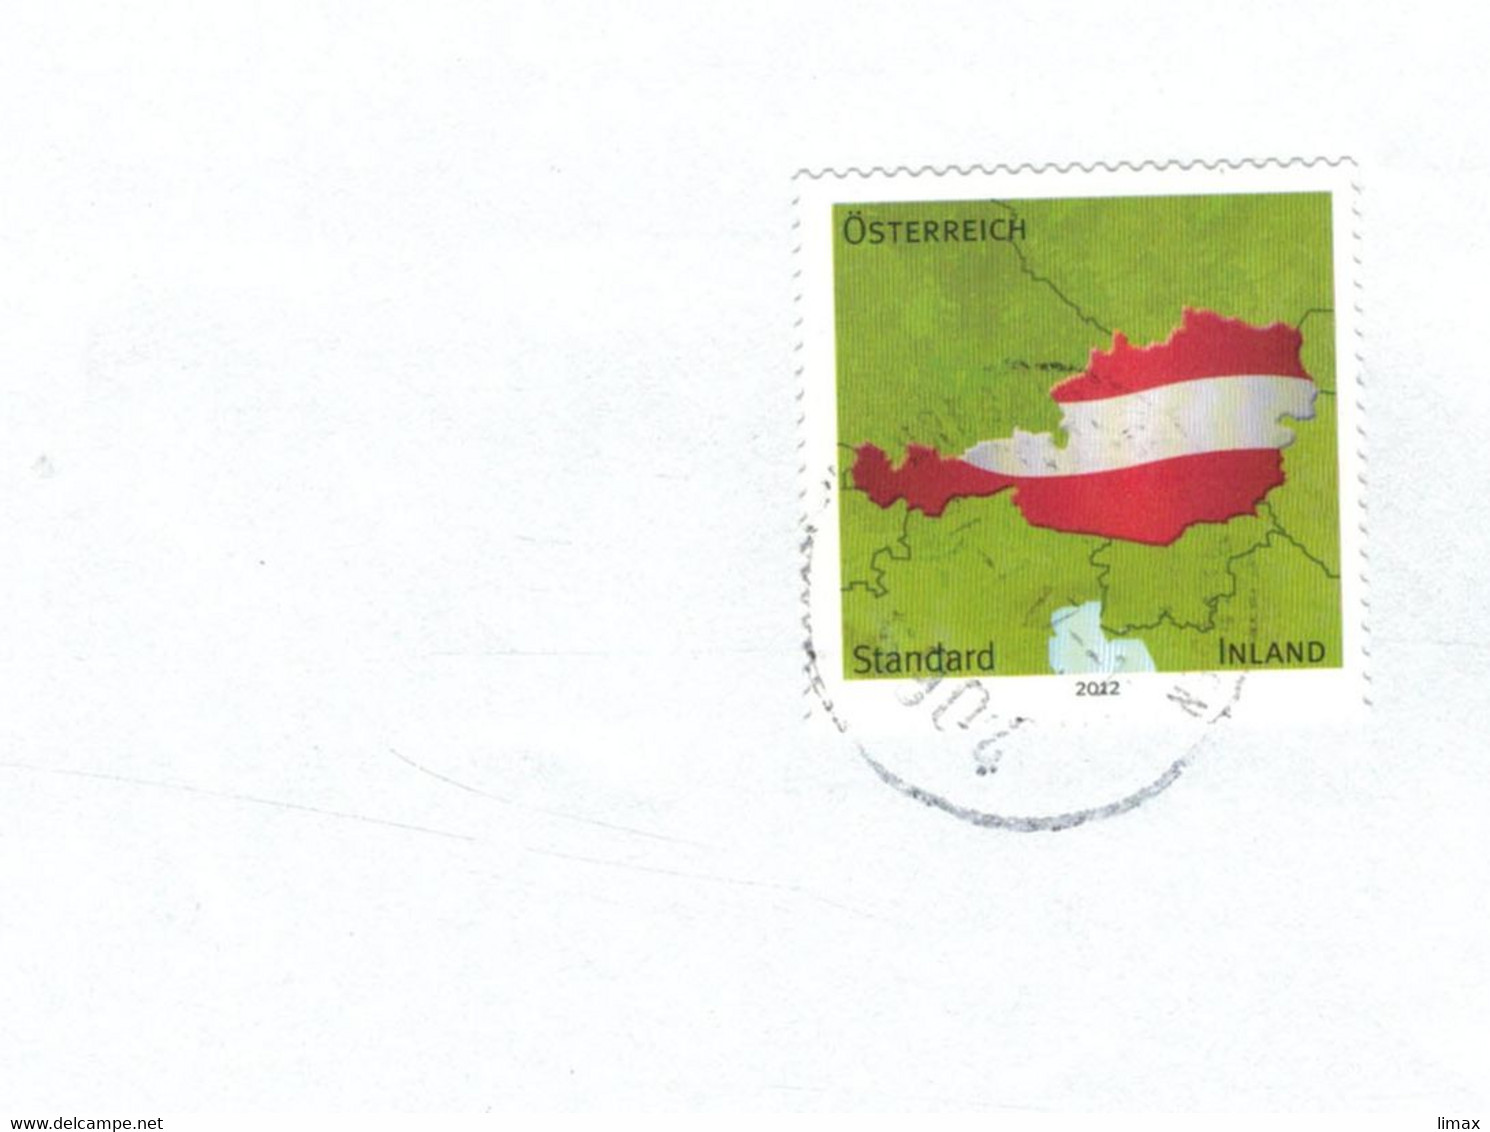 Österreich Standard Inland - Ohne Währungsangabe - Forever - Covers & Documents